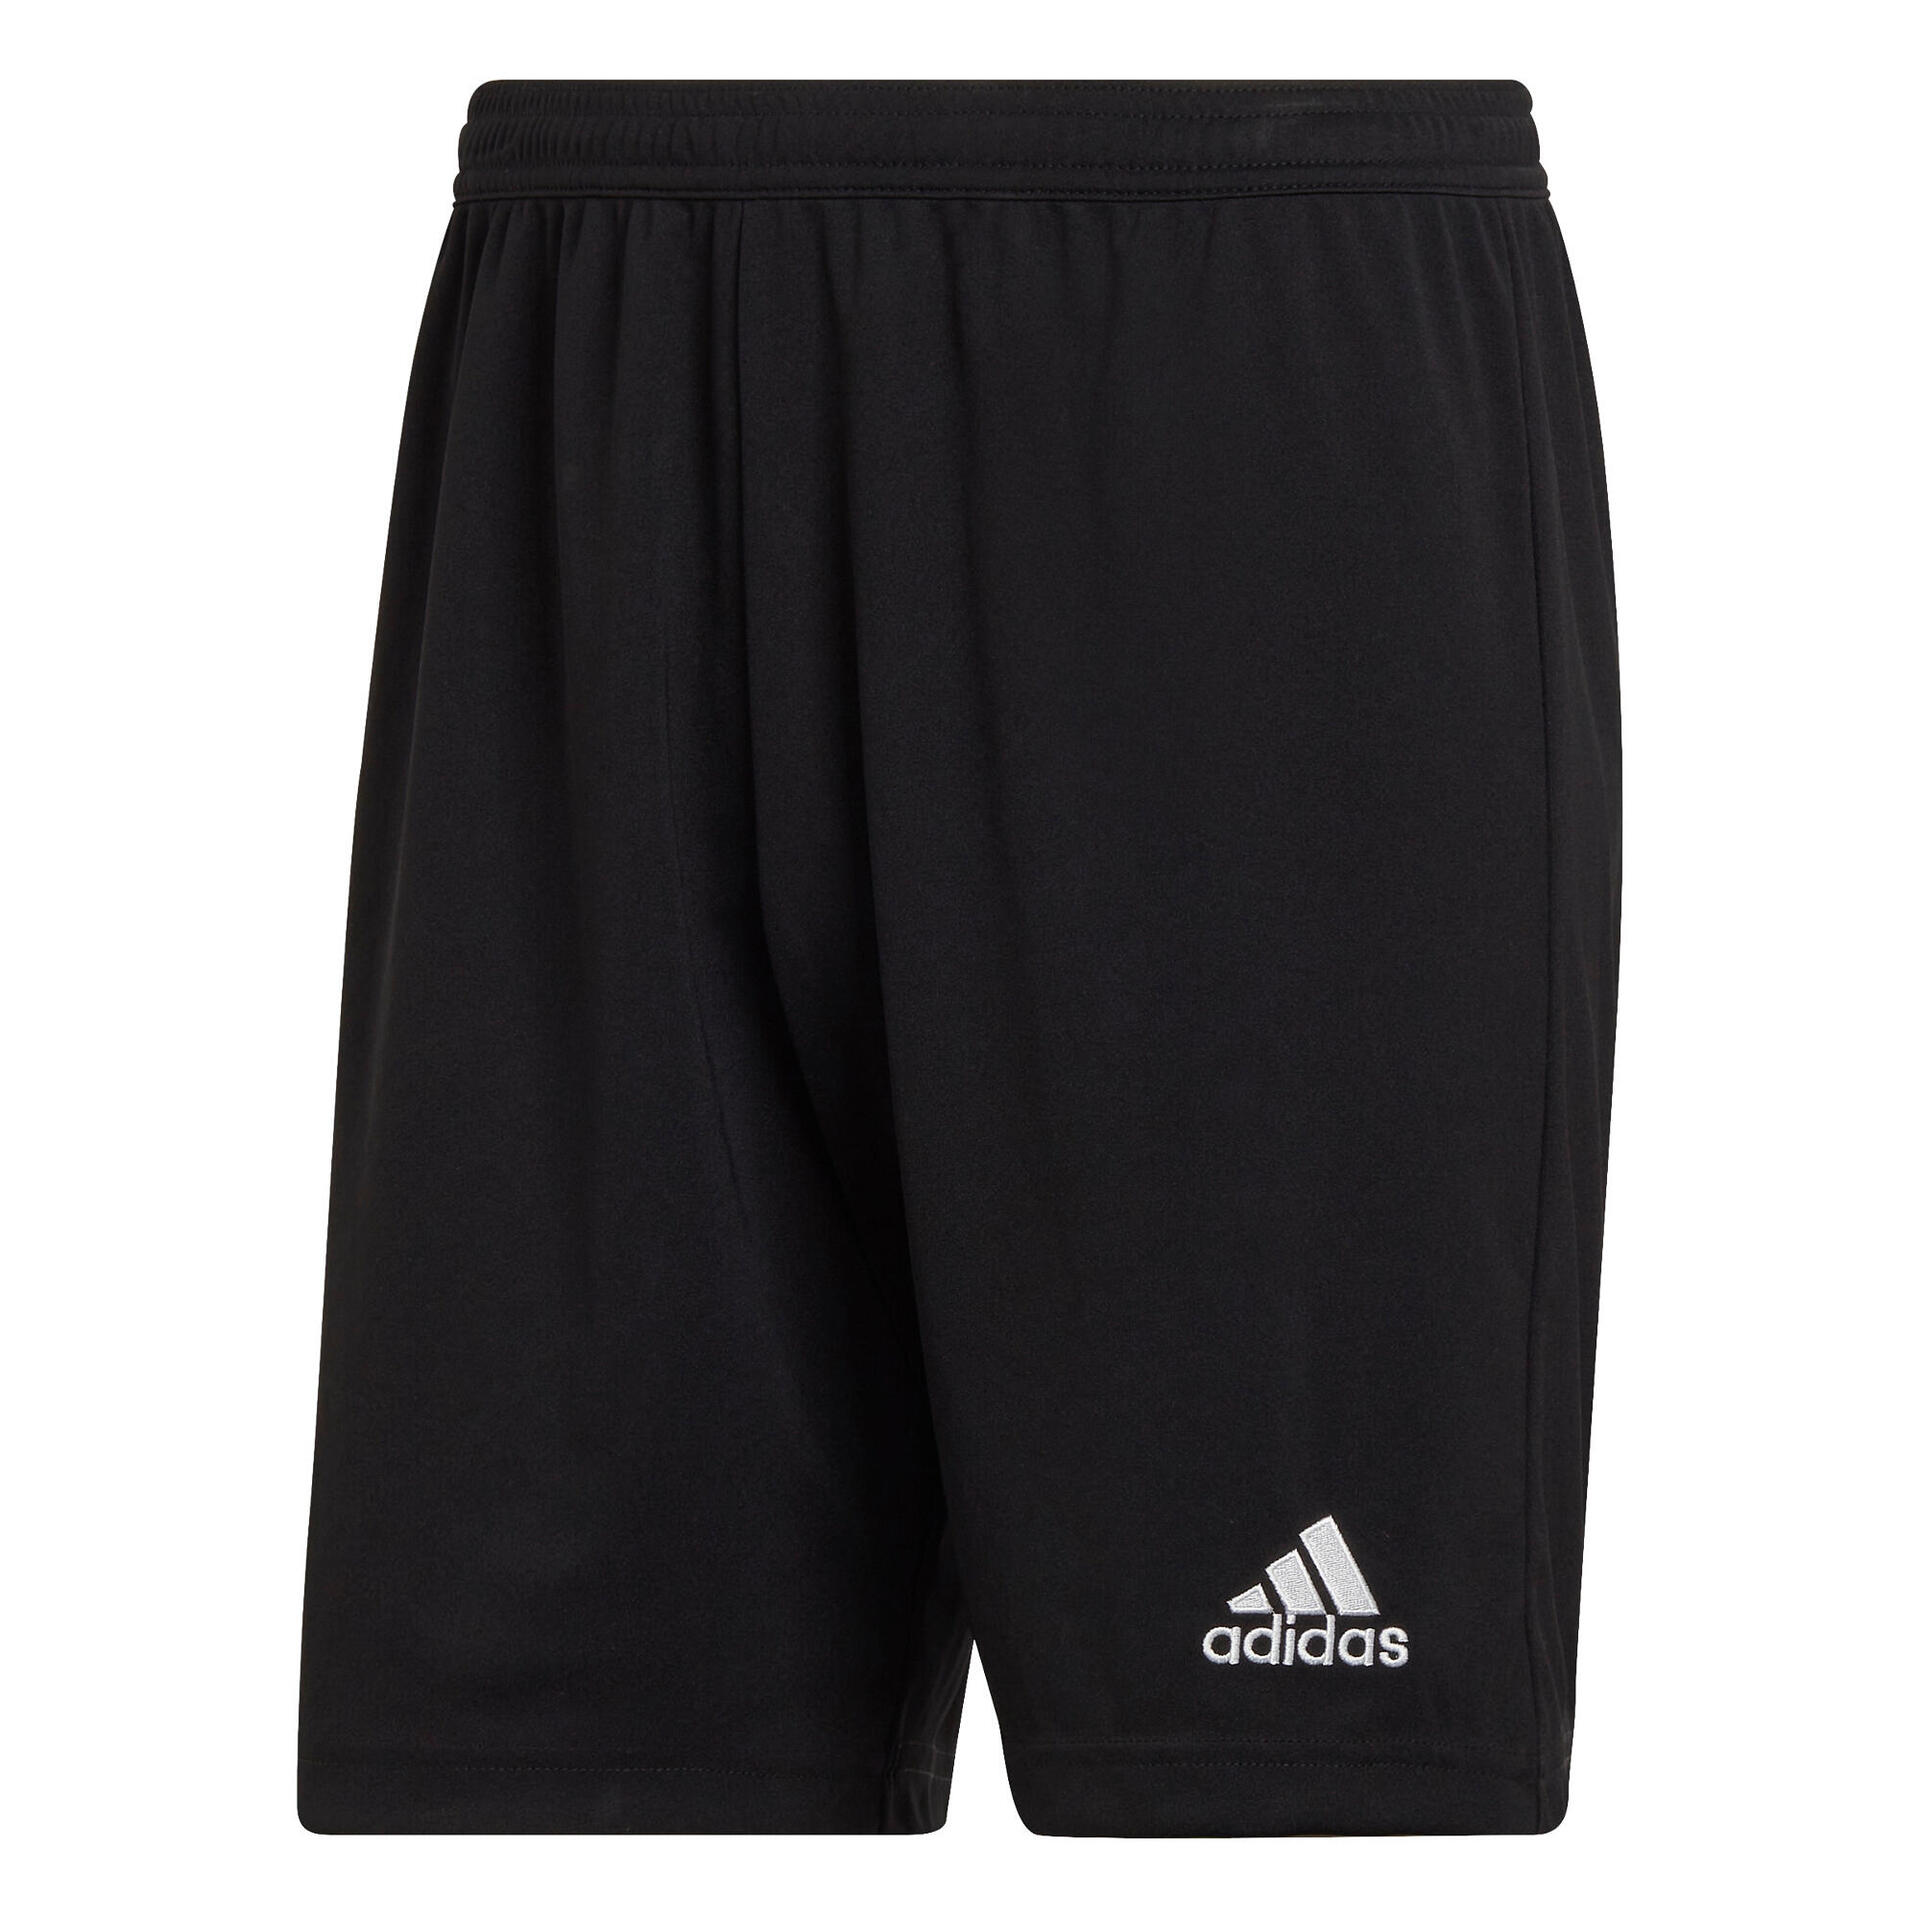 Les plus beaux shorts de football Adidas pour les joueurs et les clubs